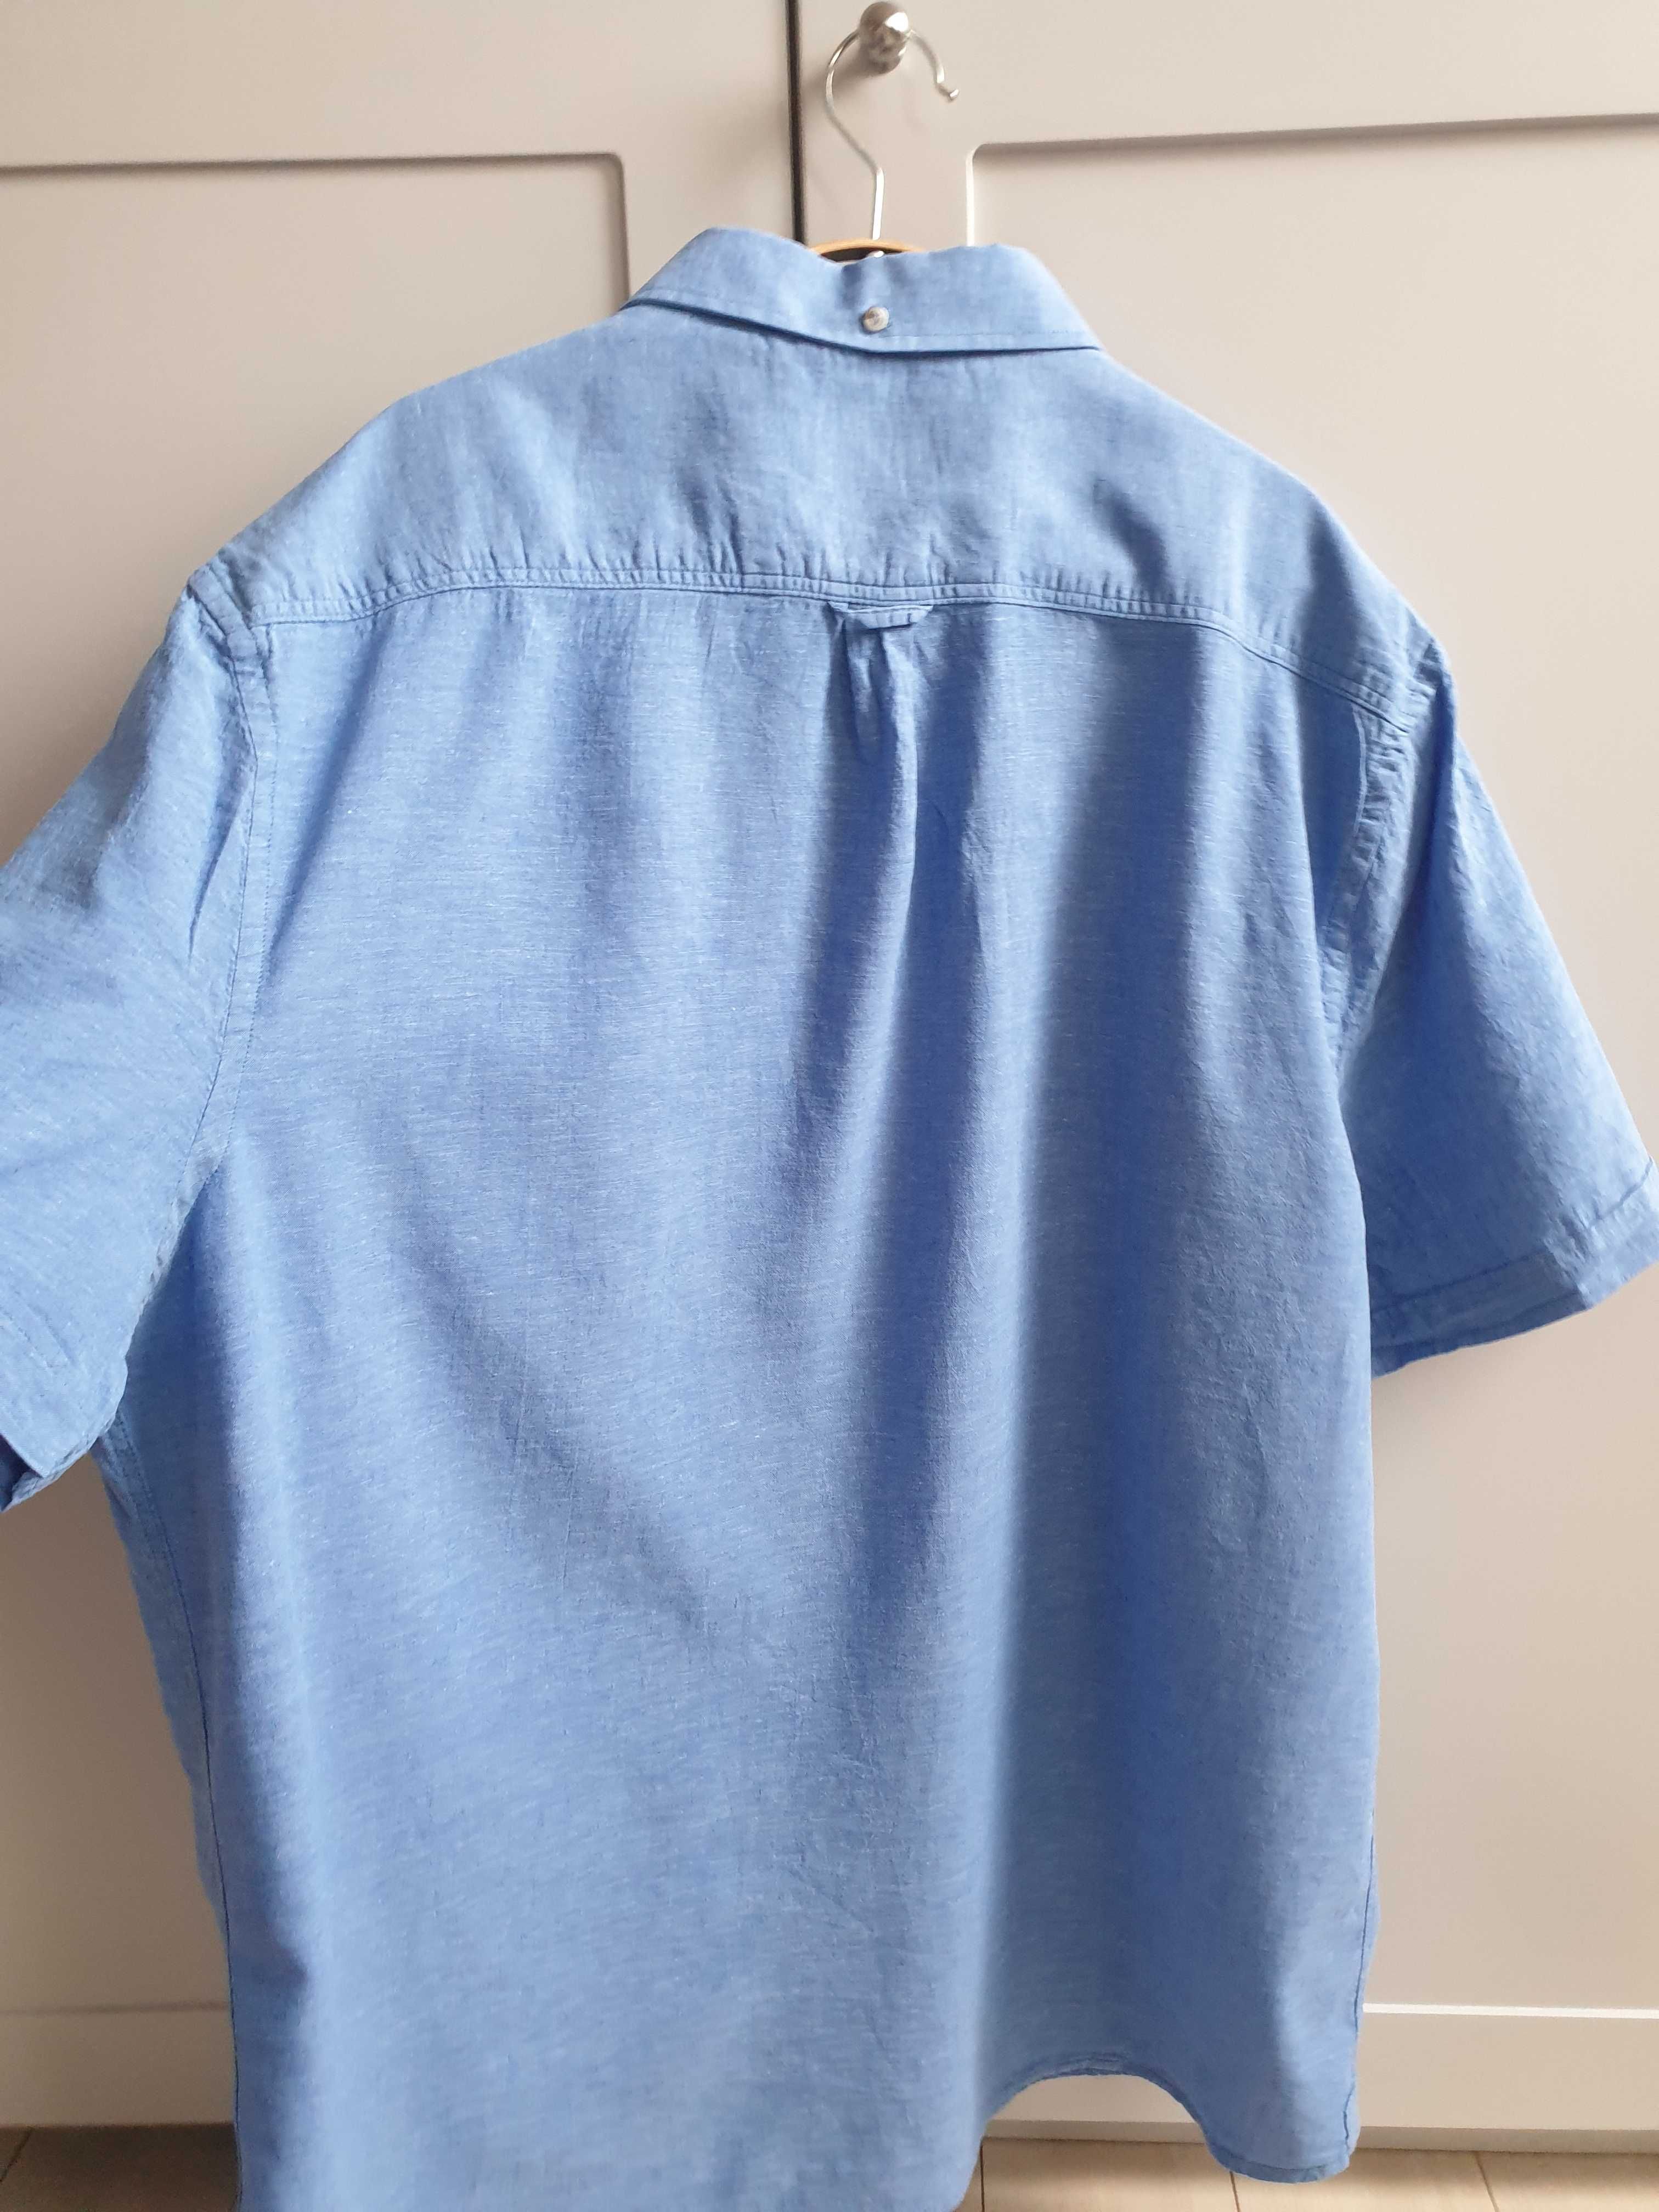 Niebieska lniana koszula 3XL XXL George z krótkim rękawem